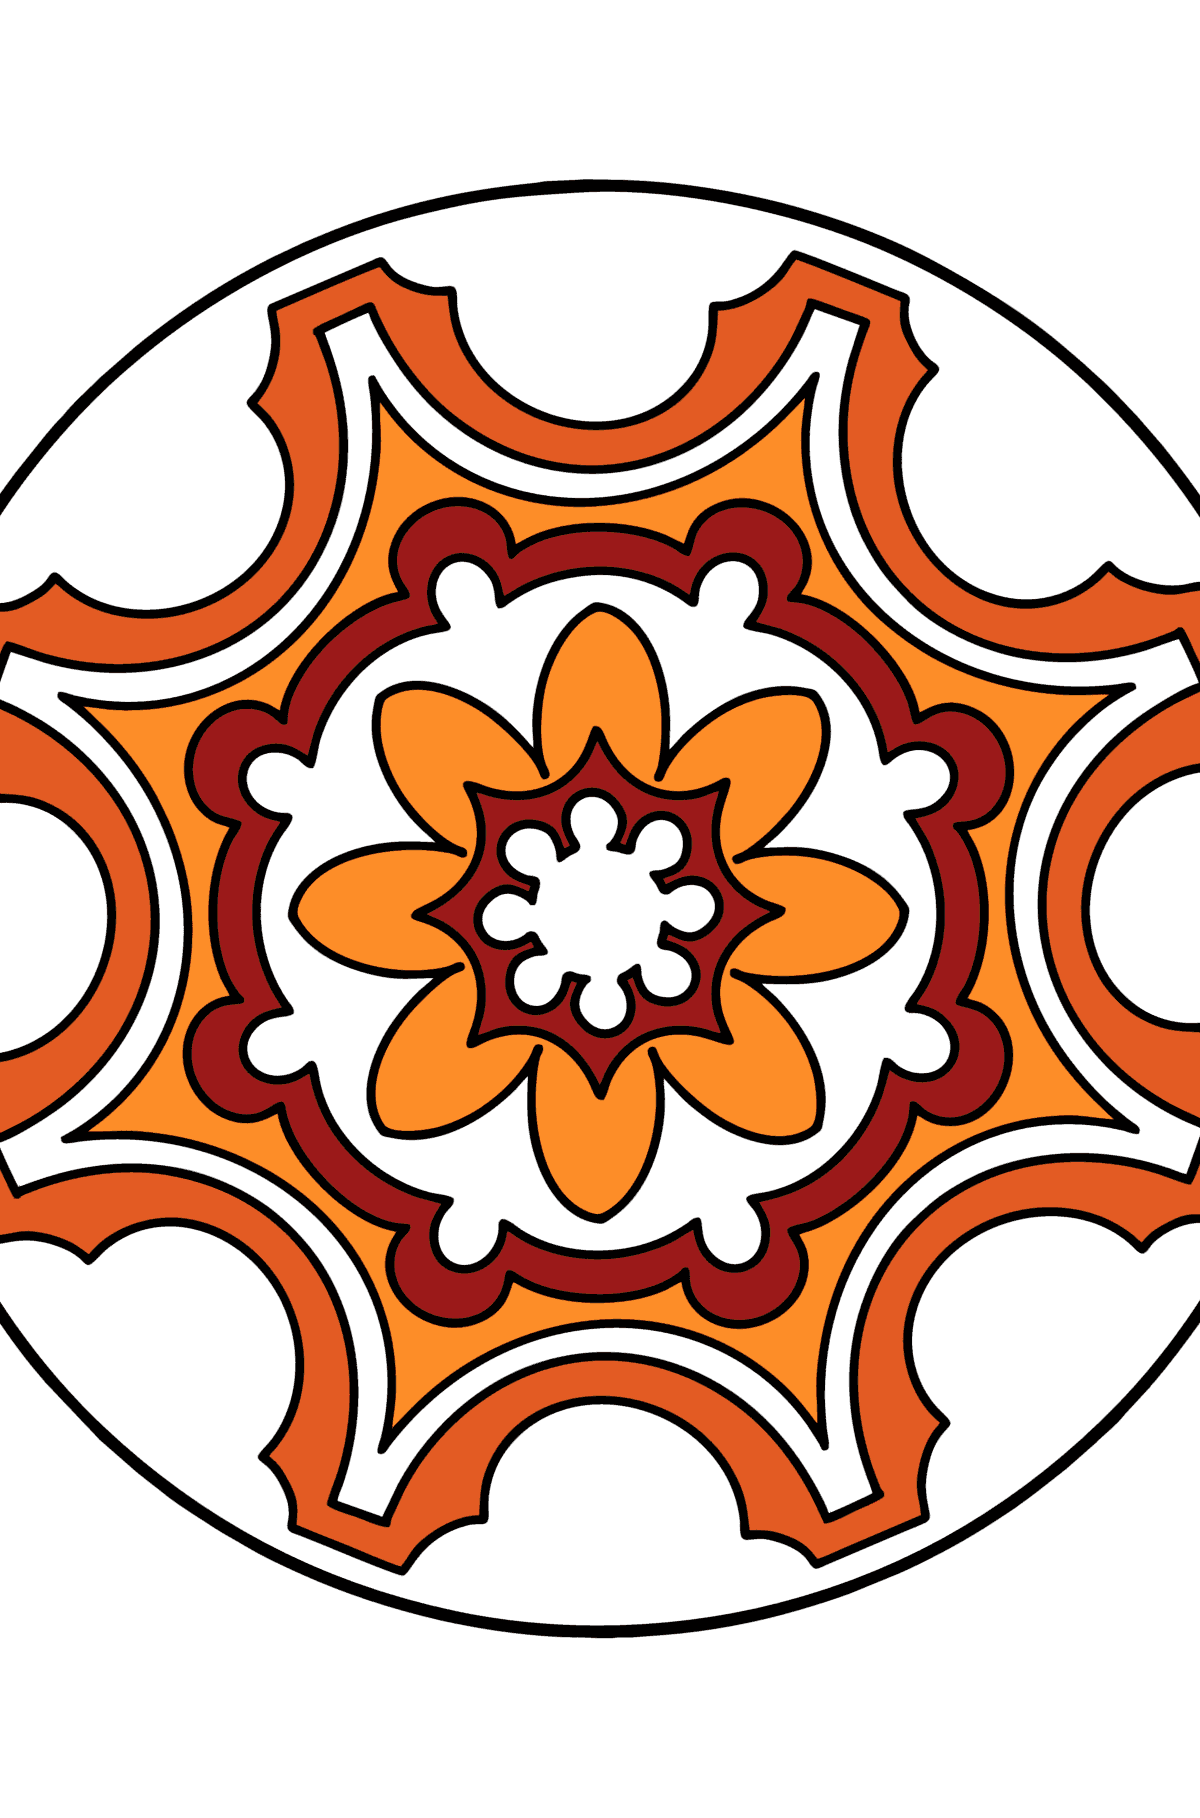 Disegno di Mandala da colorare - 9 elementi - Disegni da colorare per bambini